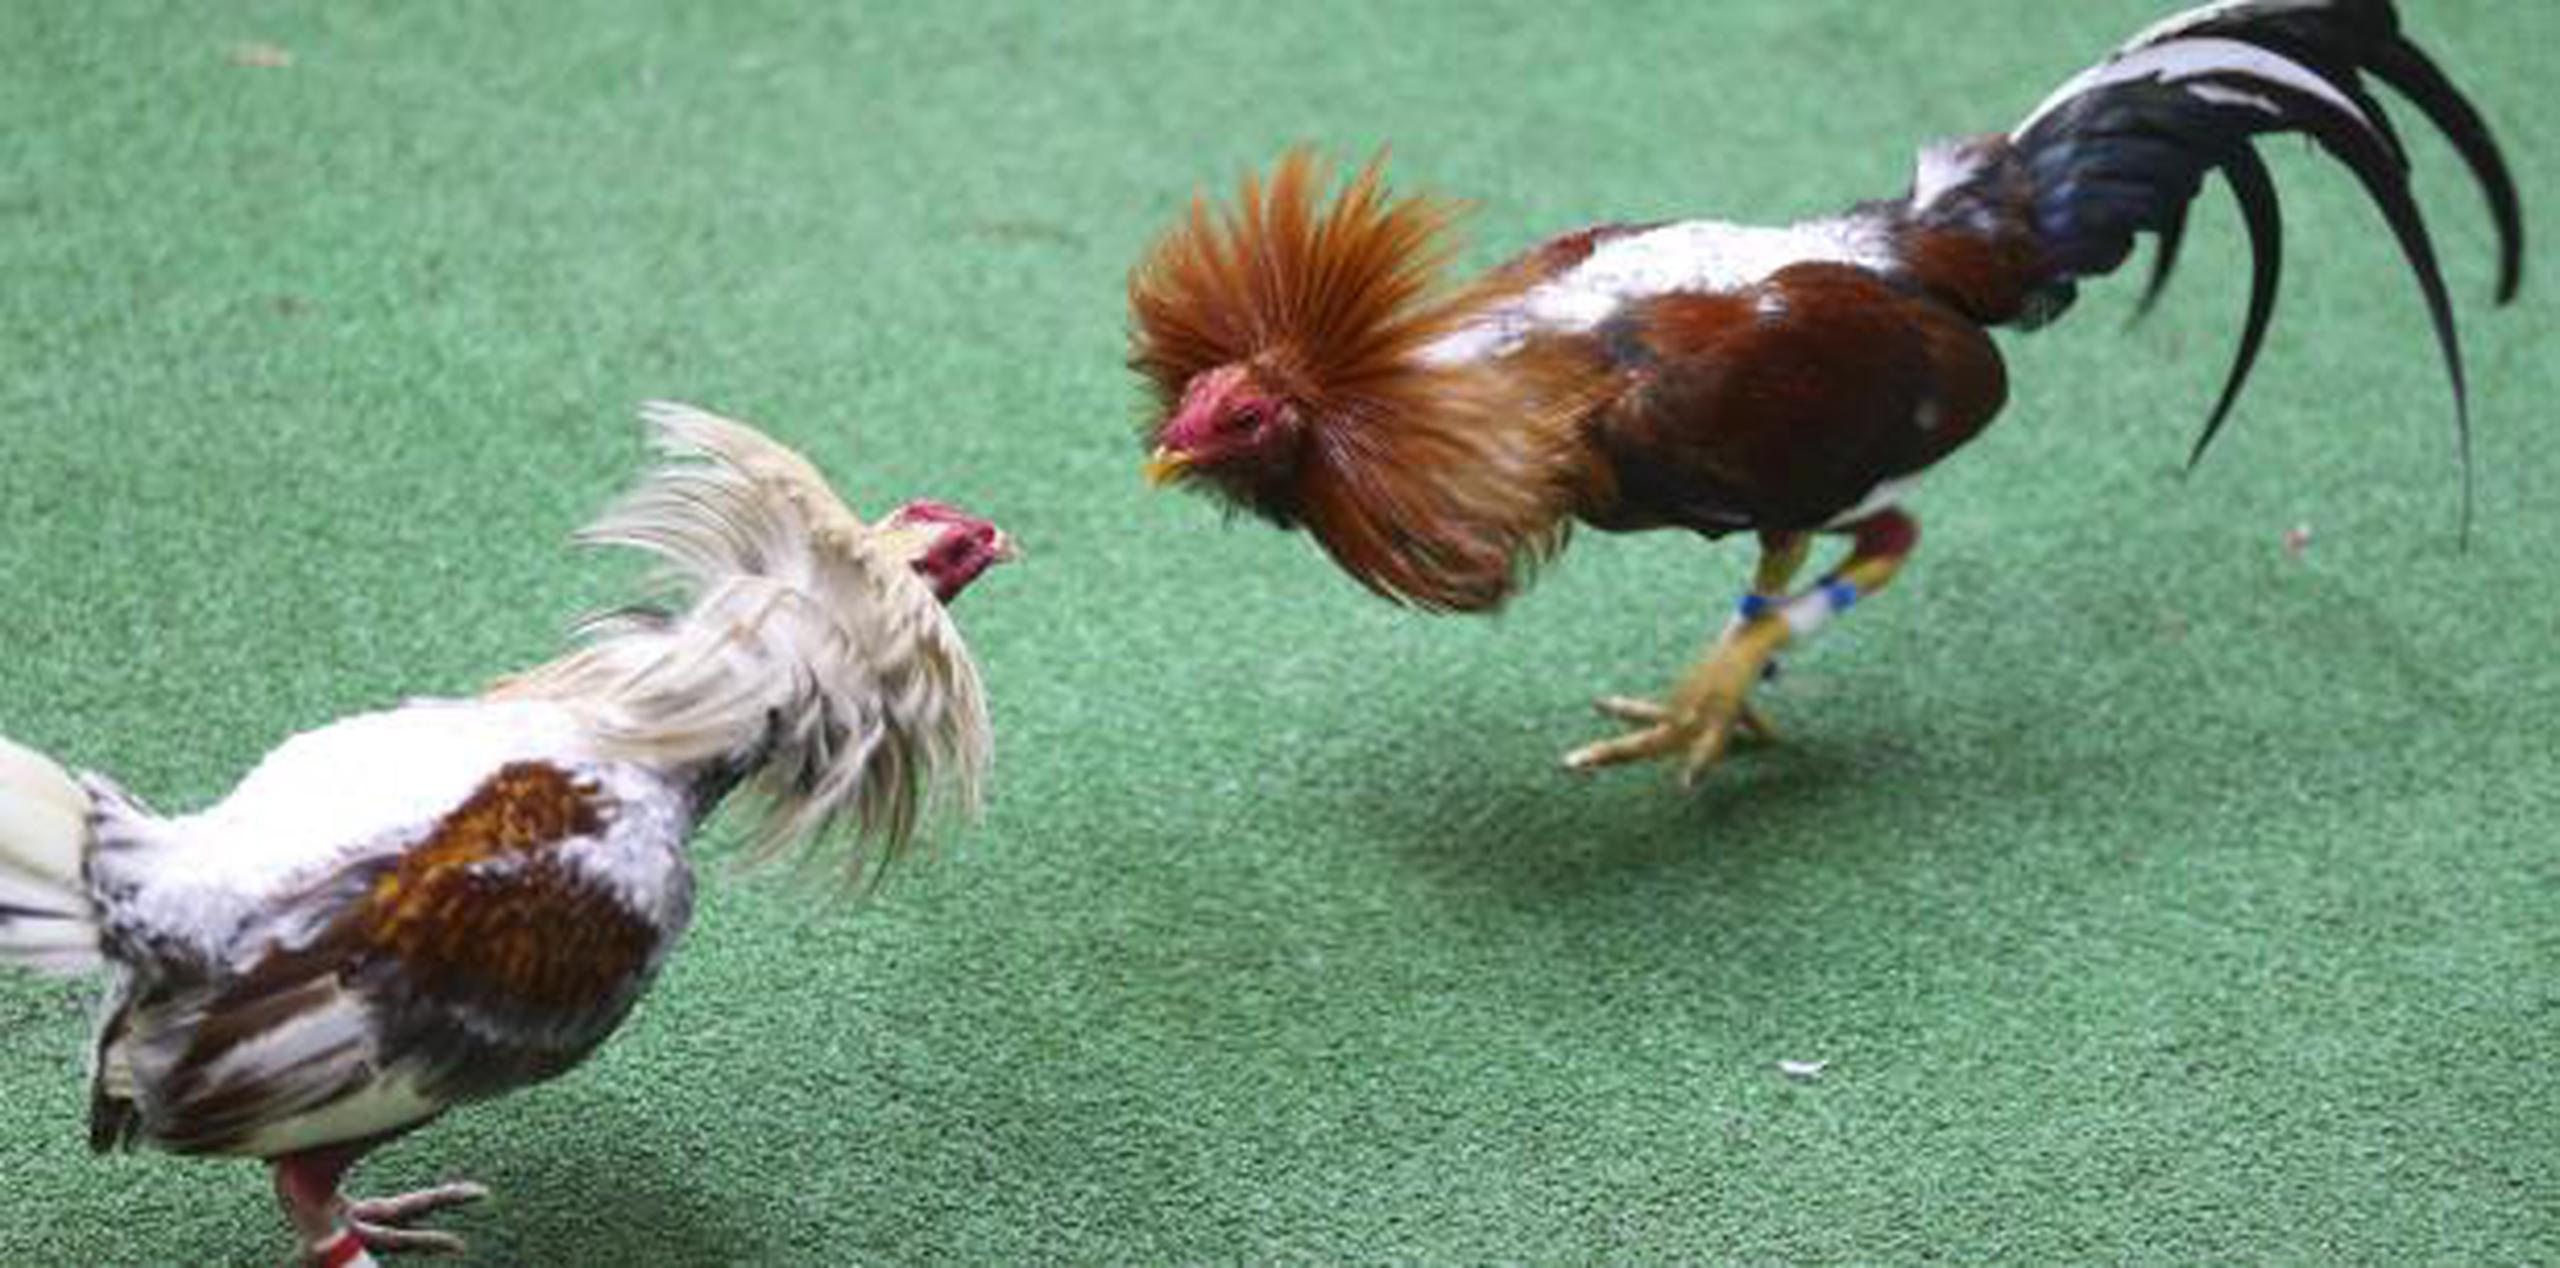 A partir de diciembre, quedarán prohibidas en Puerto Rico las peleas de gallos. (Archivo)